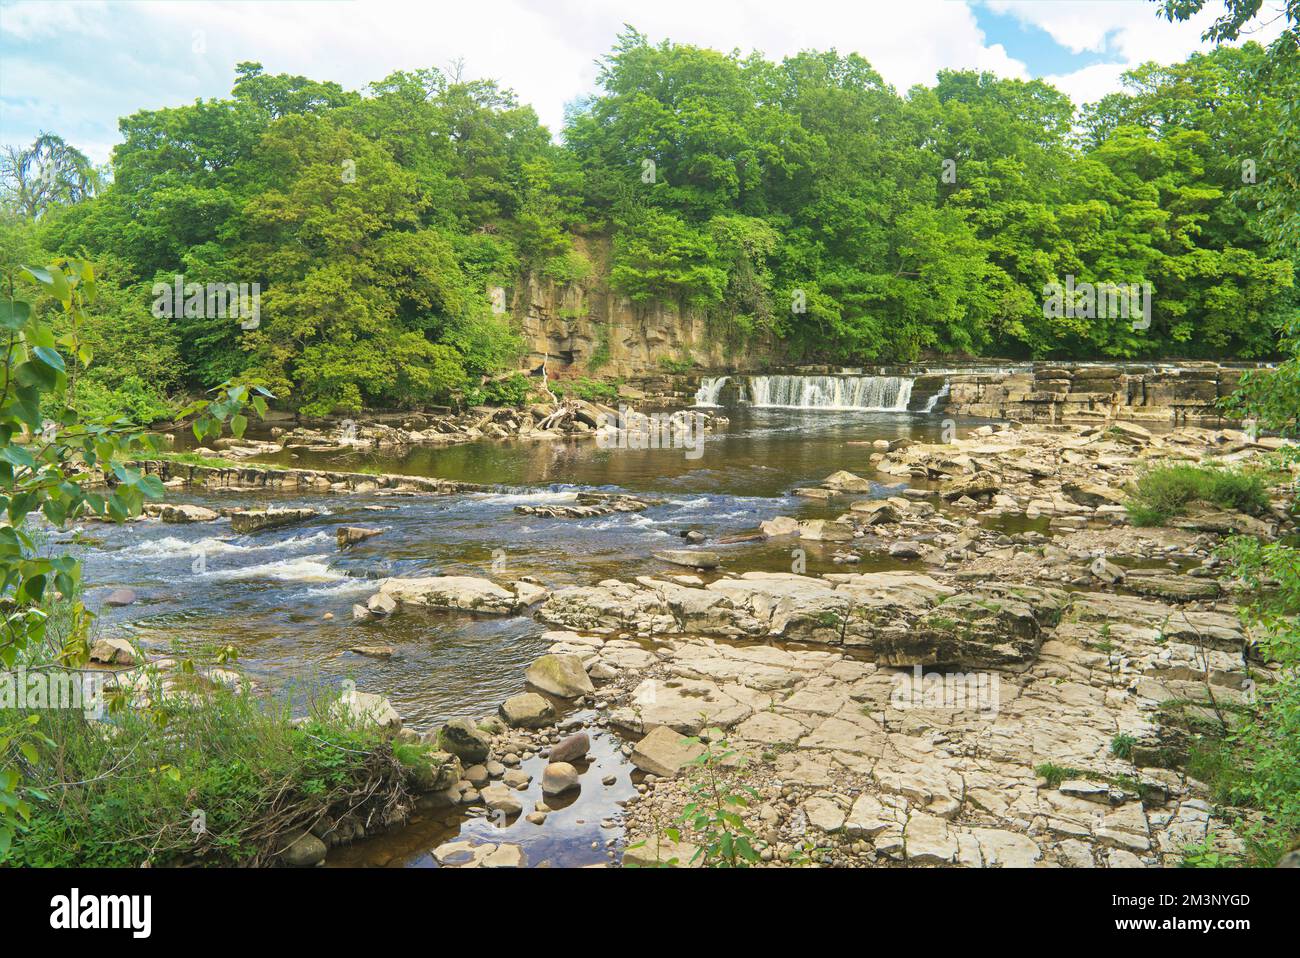 River Swale, depuis le parc de voitures Fosse, Richmond Falls, Richmond, North Yorkshire, Angleterre, Royaume-Uni Banque D'Images